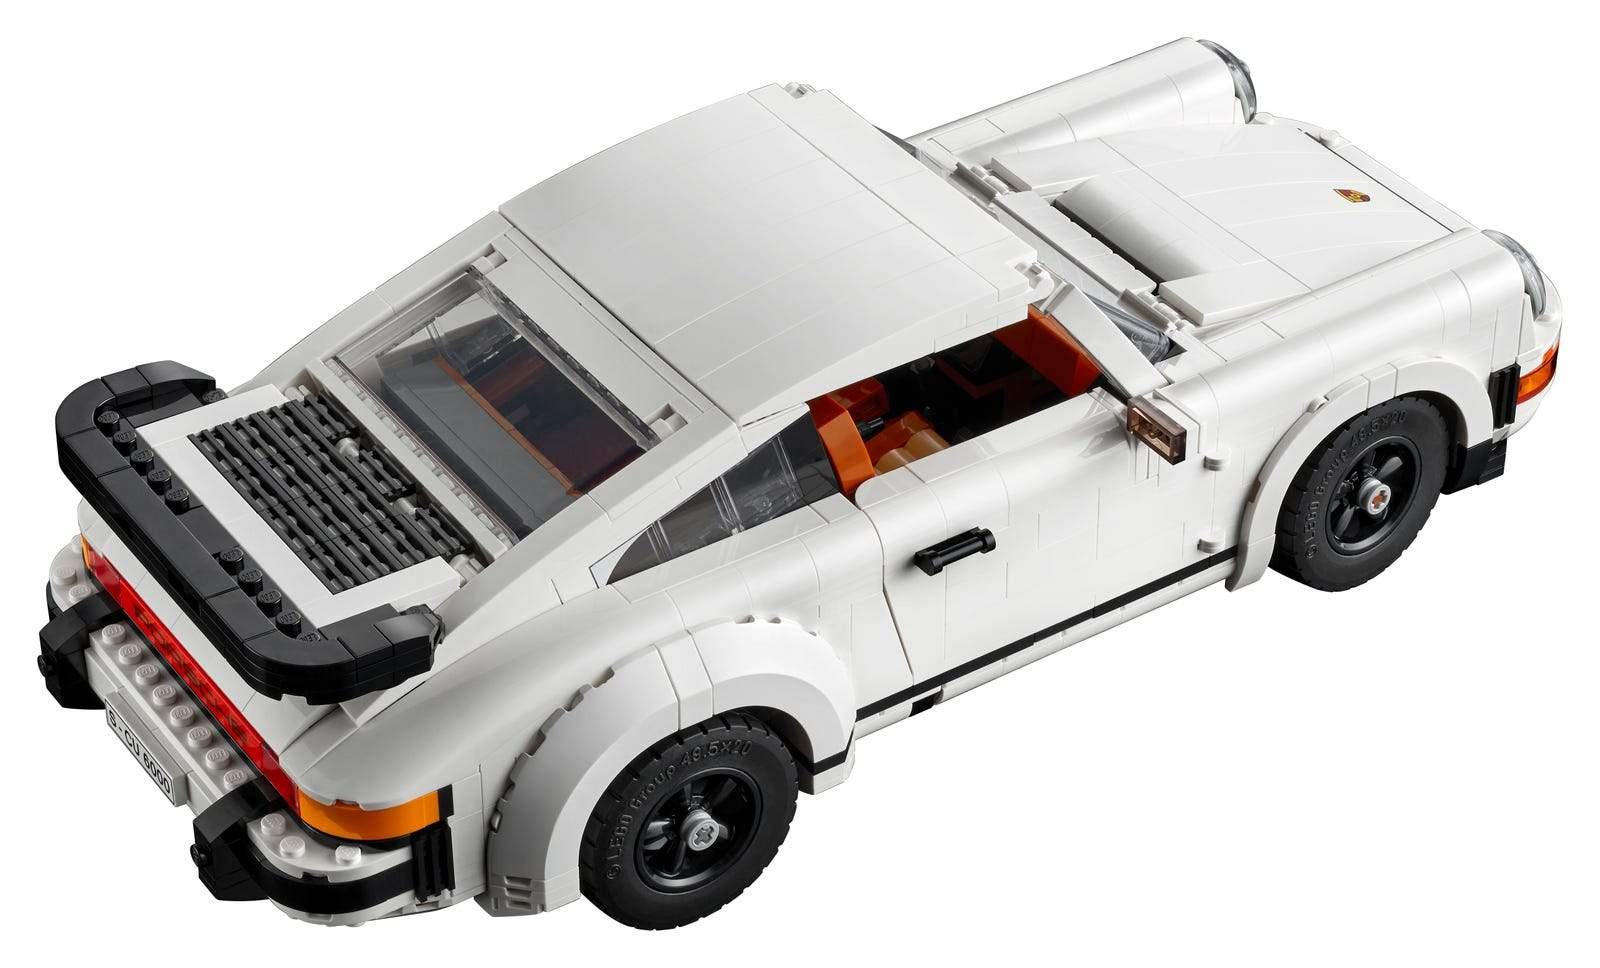 LEGO® Creator Expert Porsche 911 - LEGO® Store Srbija